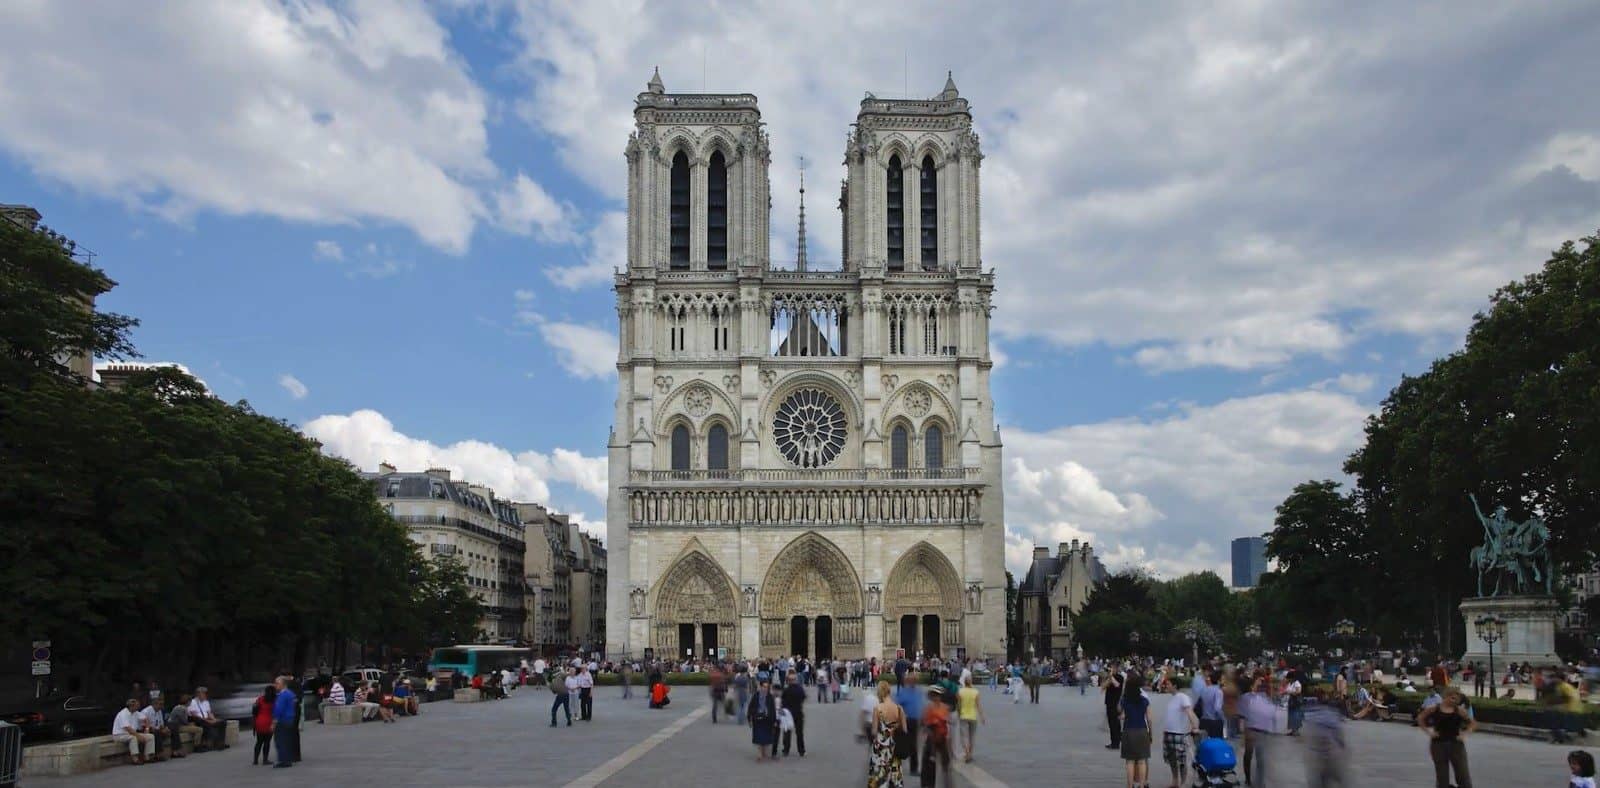 Notre Dame de Paris facade in the 4th arrondissement